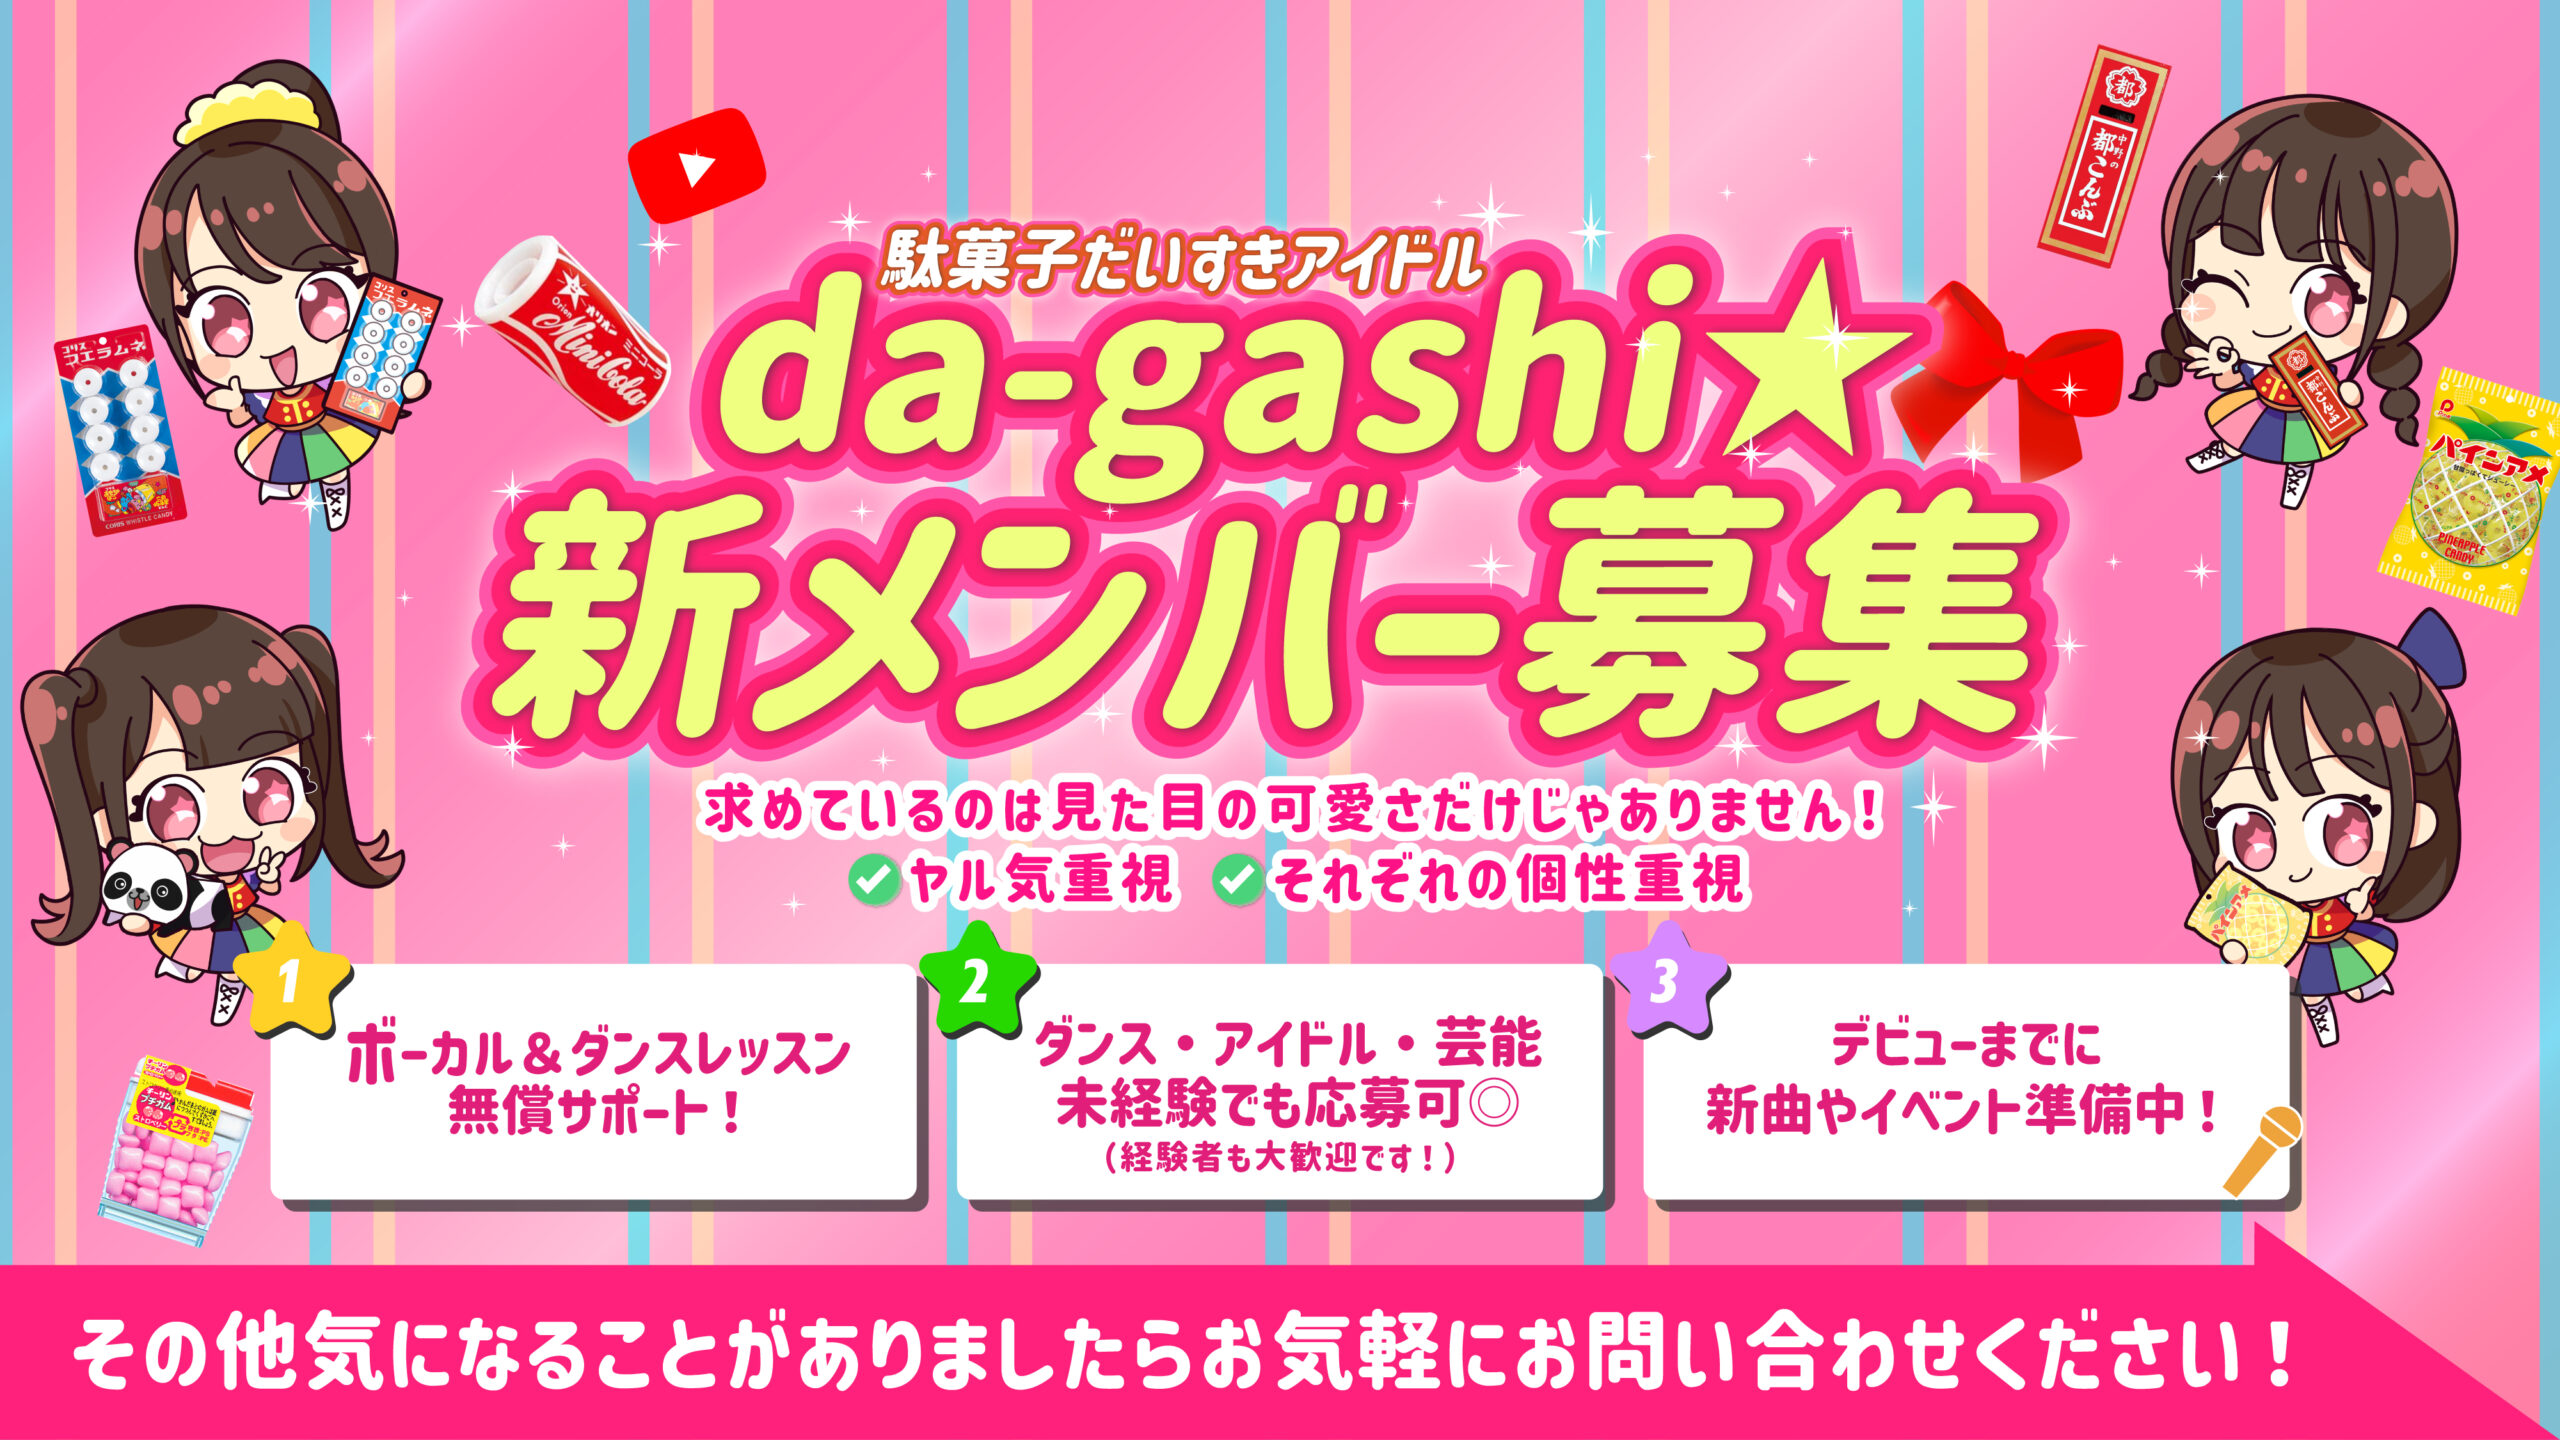 大阪有名製菓メーカーとのコラボ企画！ 駄菓子だいすきアイドル「da-gashi☆」の新メンバー募集開始！